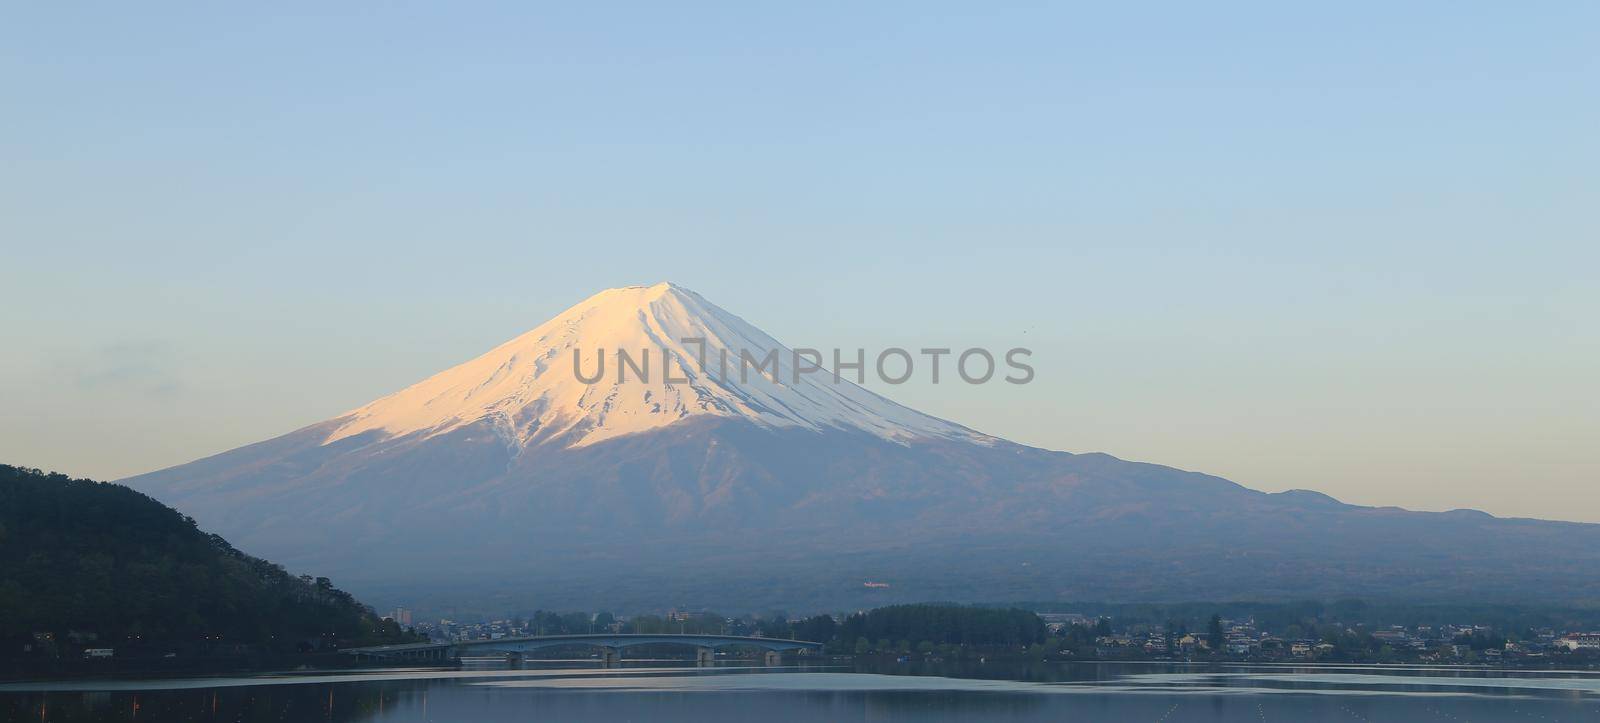 Mount Fuji, view from Lake Kawaguchiko by geargodz